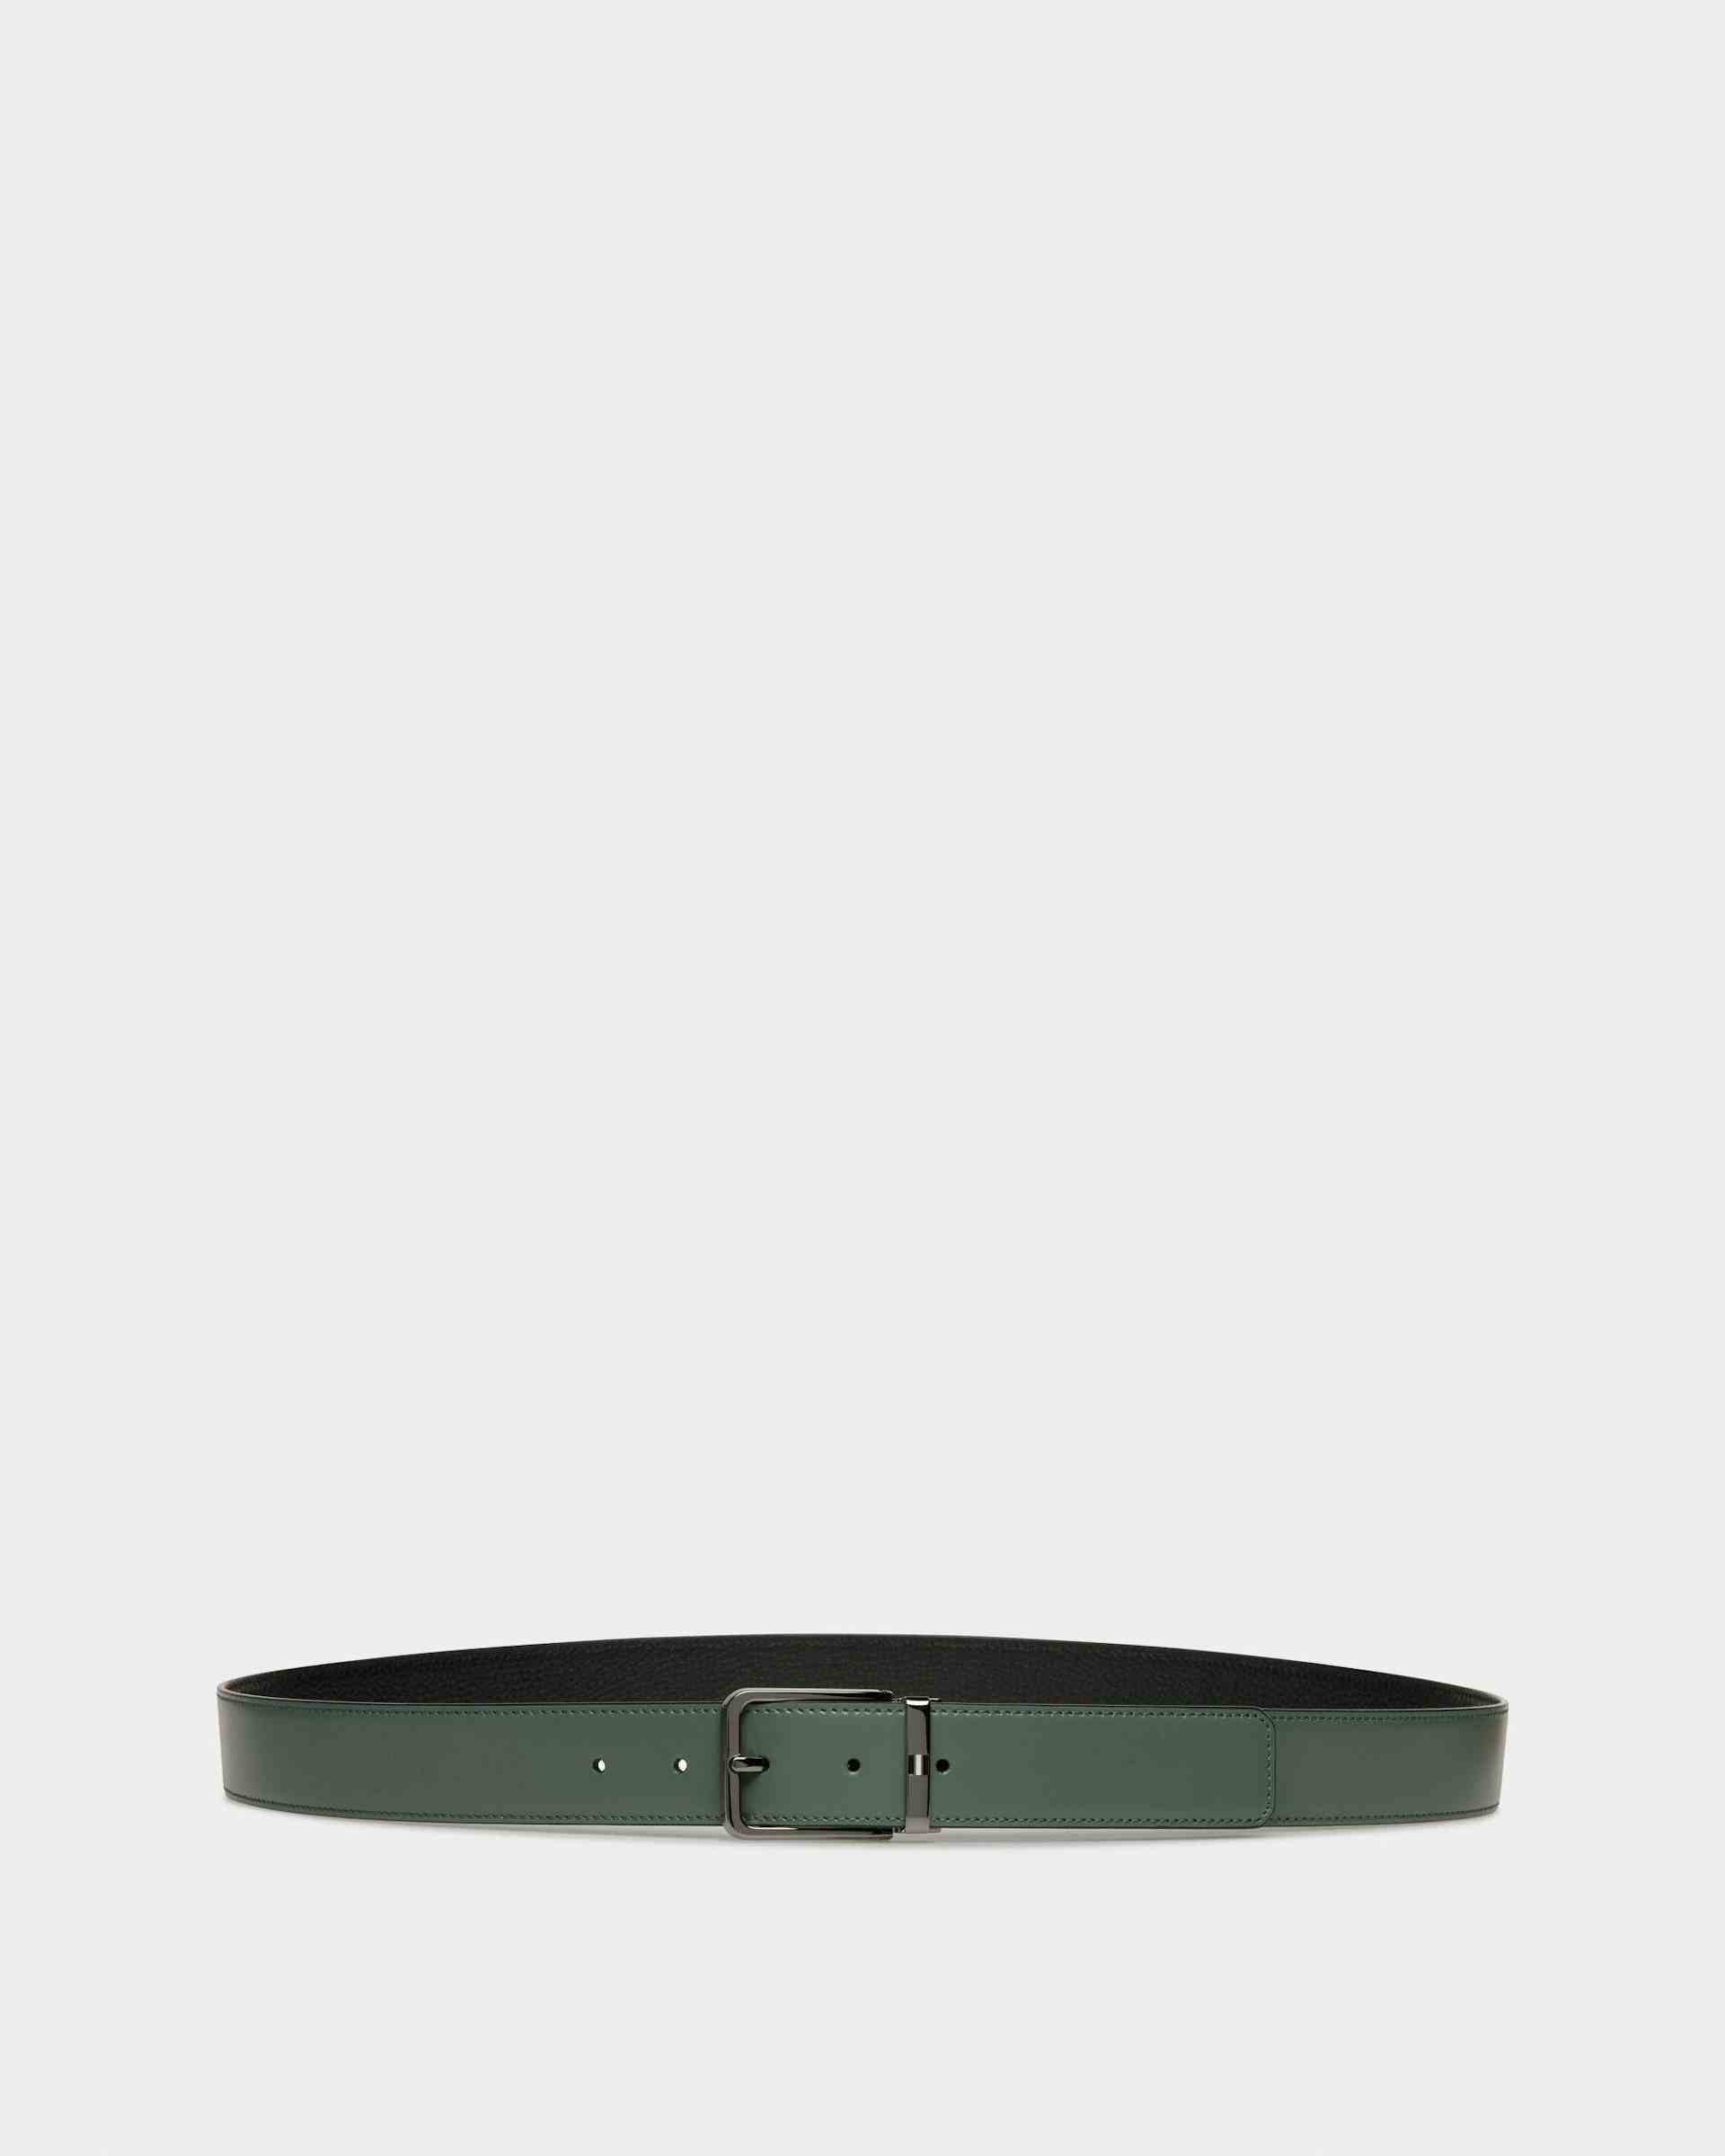 Arkin Leather 35mm Belt In Black & Green - Men's - Bally